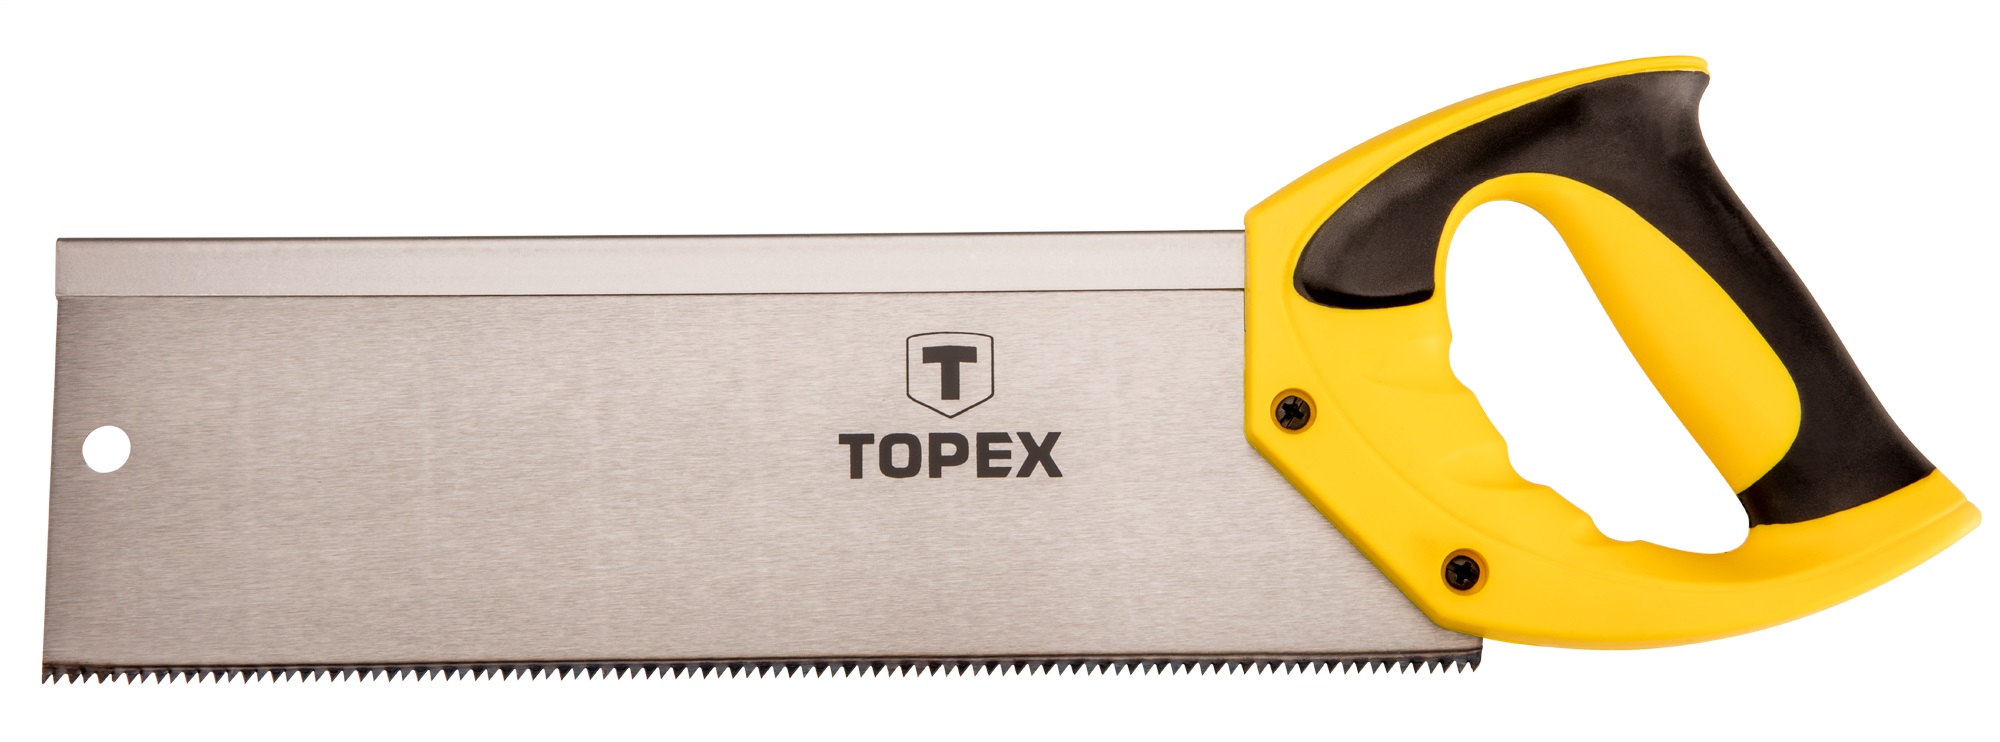 Ножовка по дереву Topex 10A706 350 мм, 13TPI (10A706) в Киеве